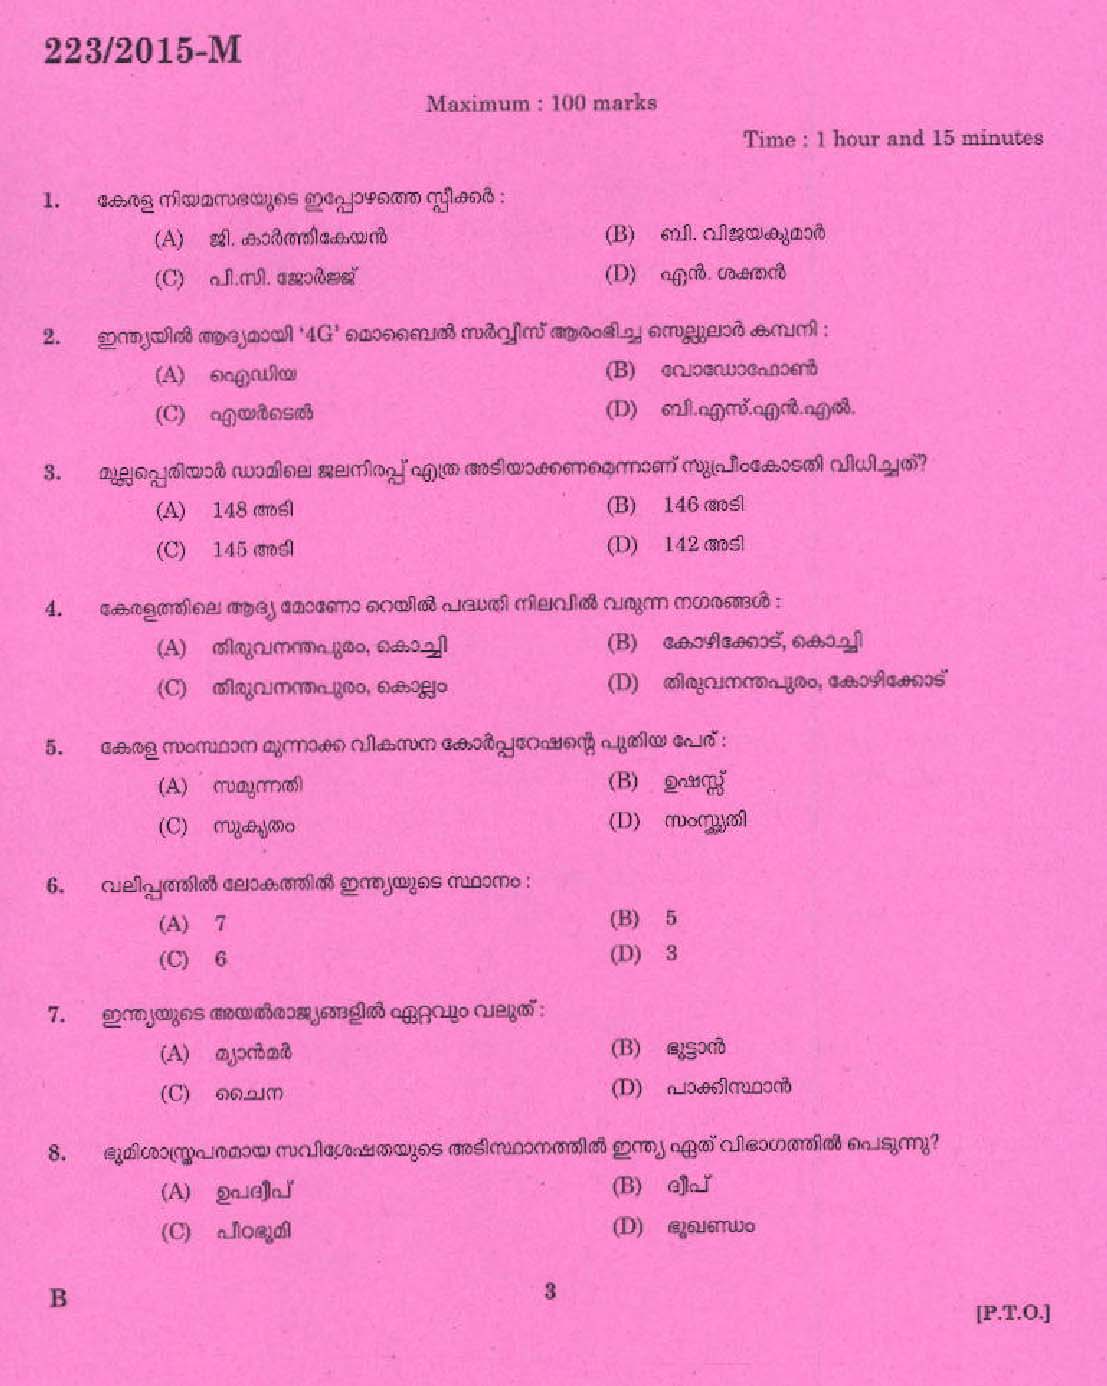 Kerala PSC Boat Driver Exam 2015 Question Paper Code 2232015 M 1